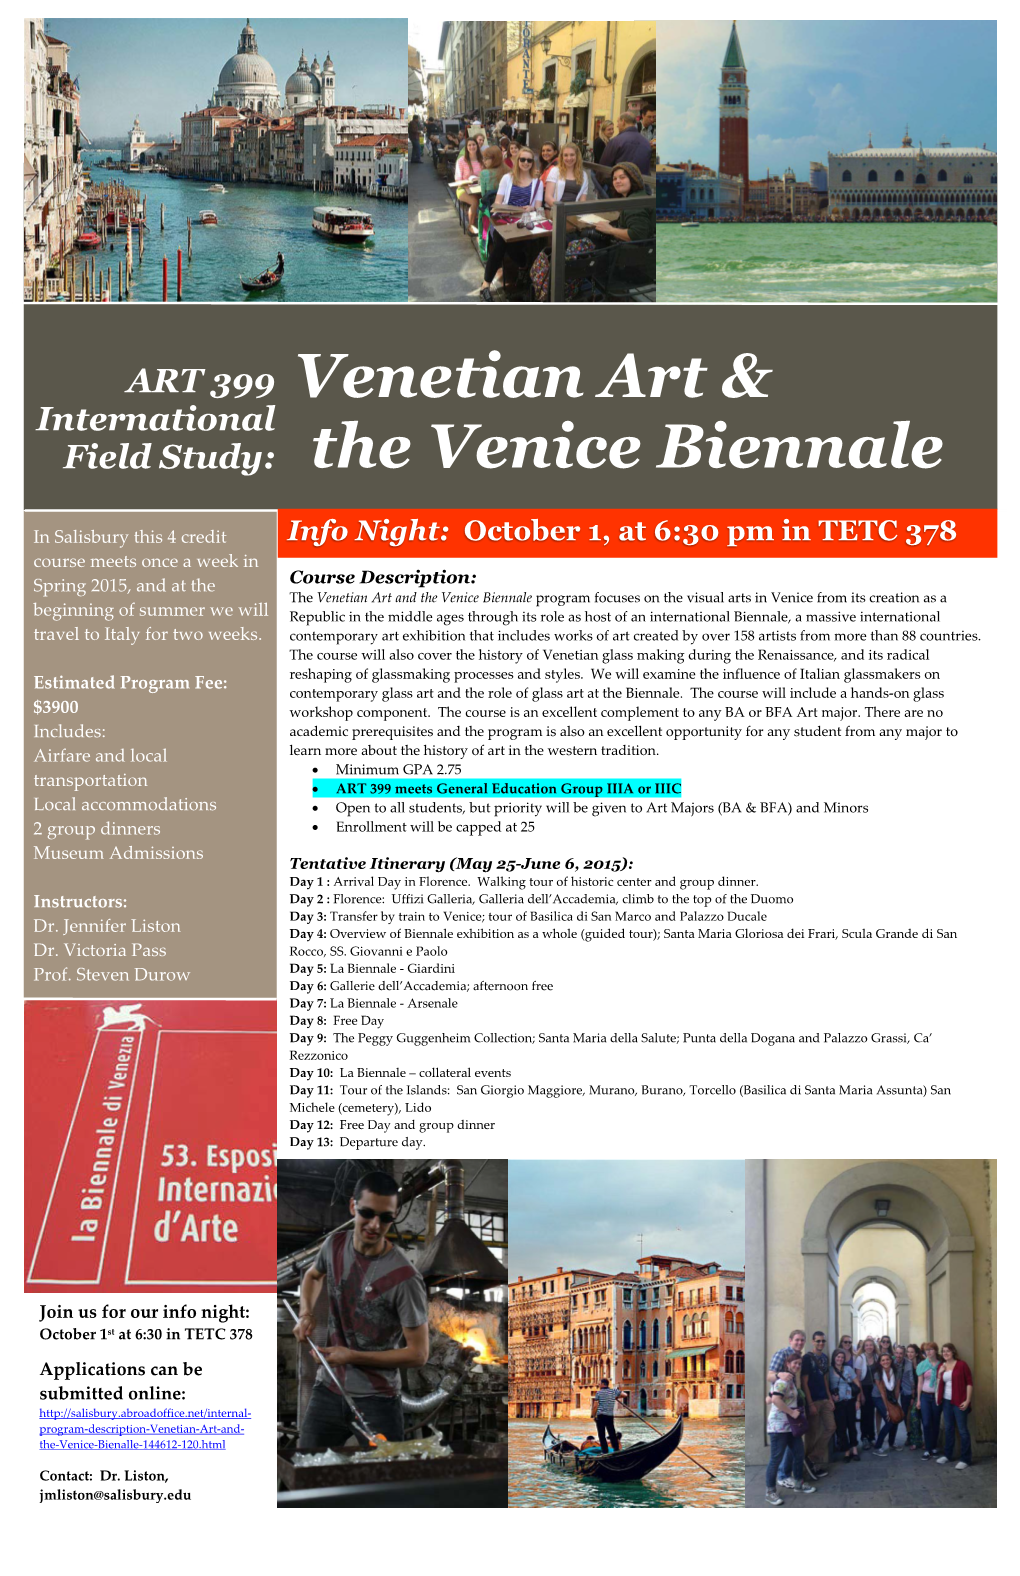 Venetian Art & the Venice Biennale